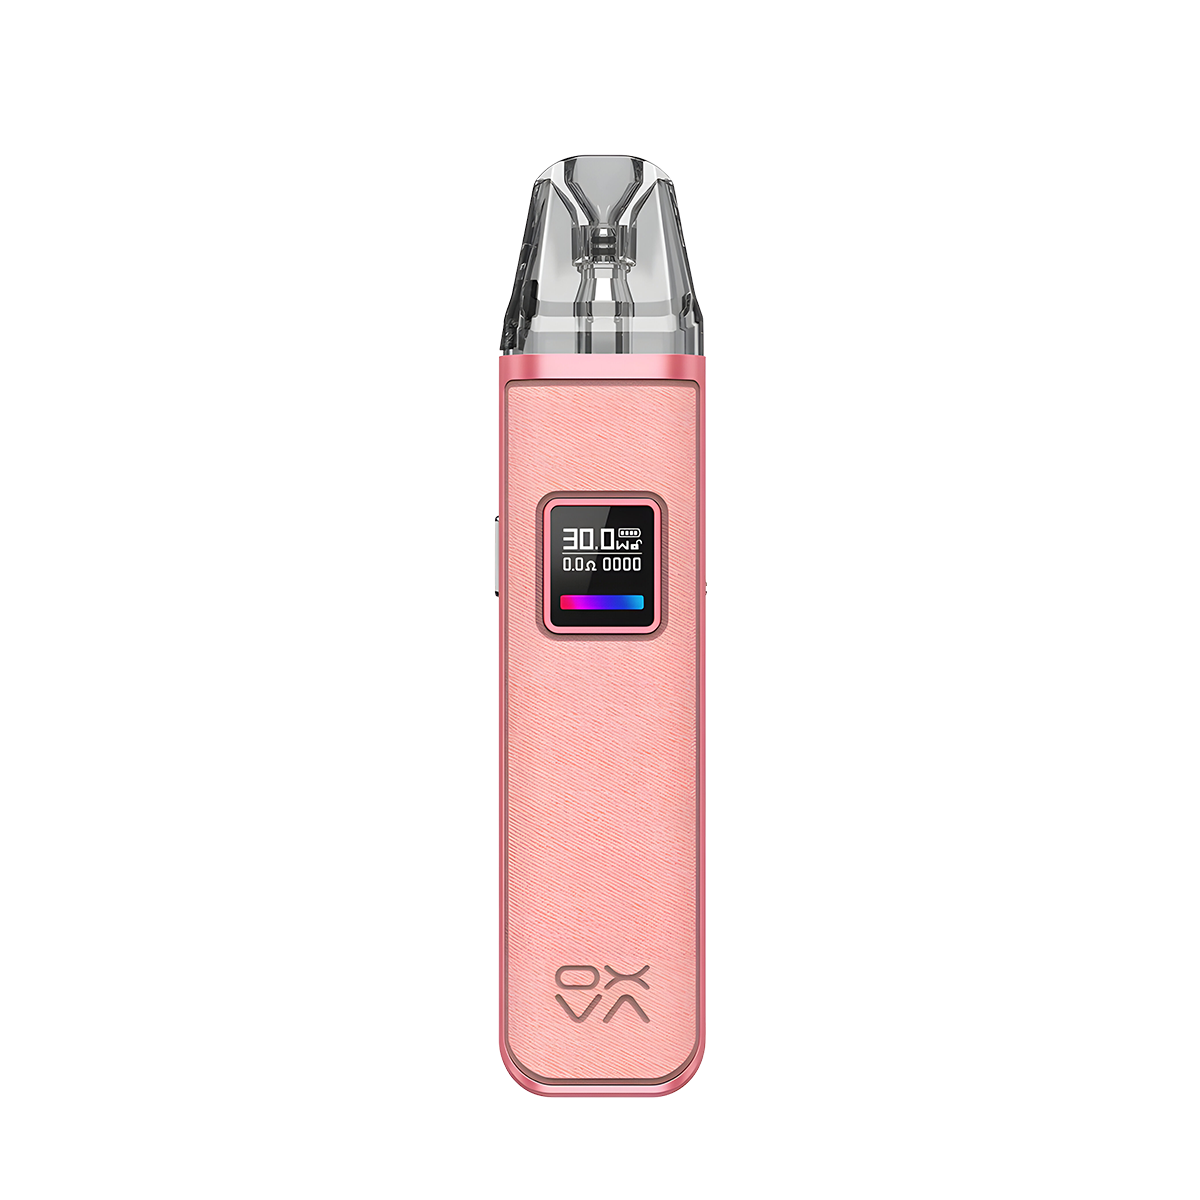 Oxva Xlim Pro Pod System Kit Kingkong Pink  